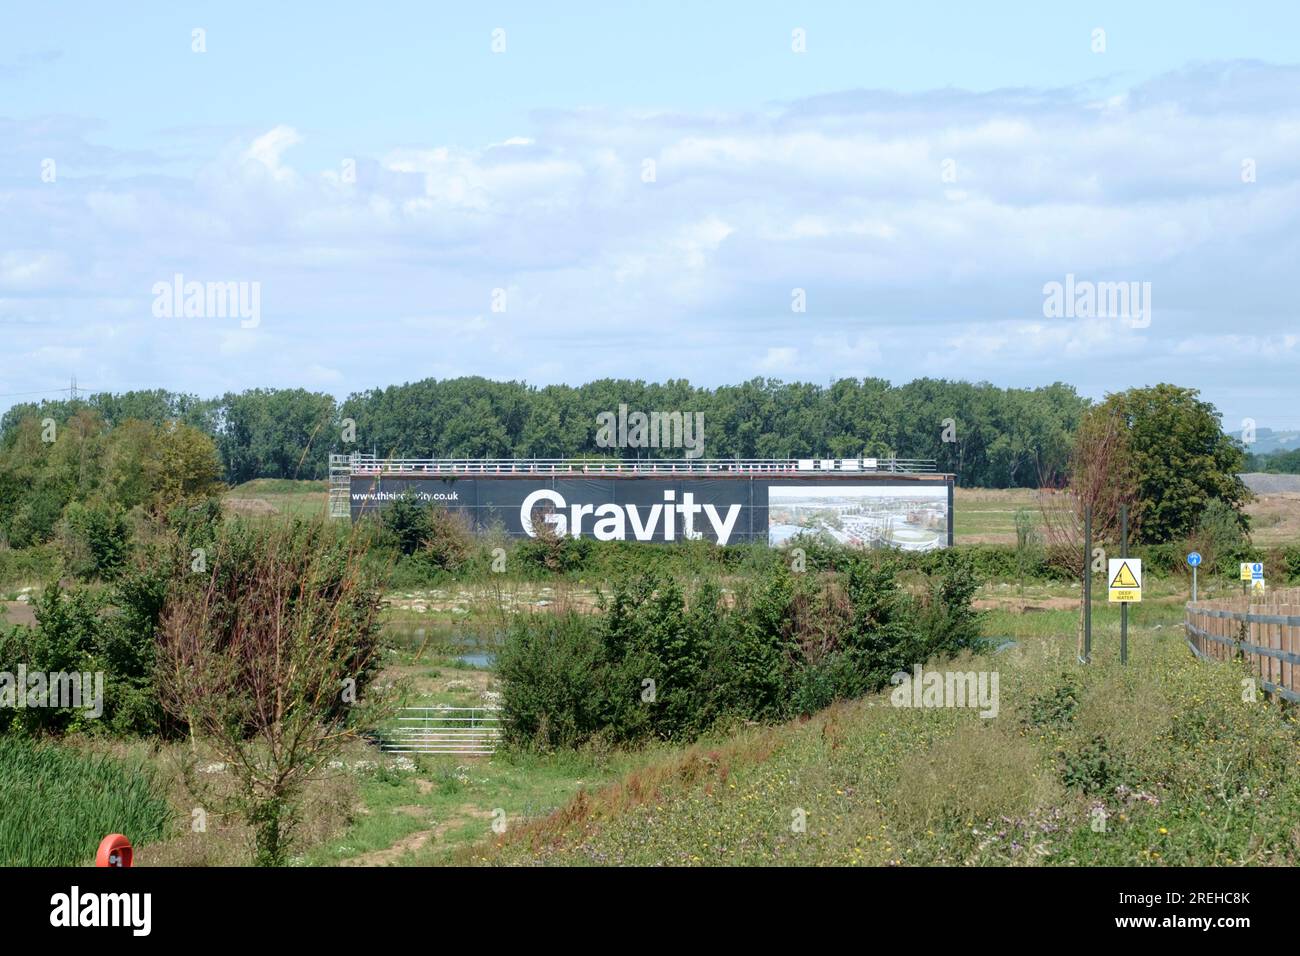 Gravitation ist ein eleganter Campus in der Nähe von Bridgewater, der auf dem Gelände des ehemaligen Royal Ordnance Site Bridgwater erbaut wurde. Bald wird es der Standort einer GIGA-Fabrik sein Stockfoto